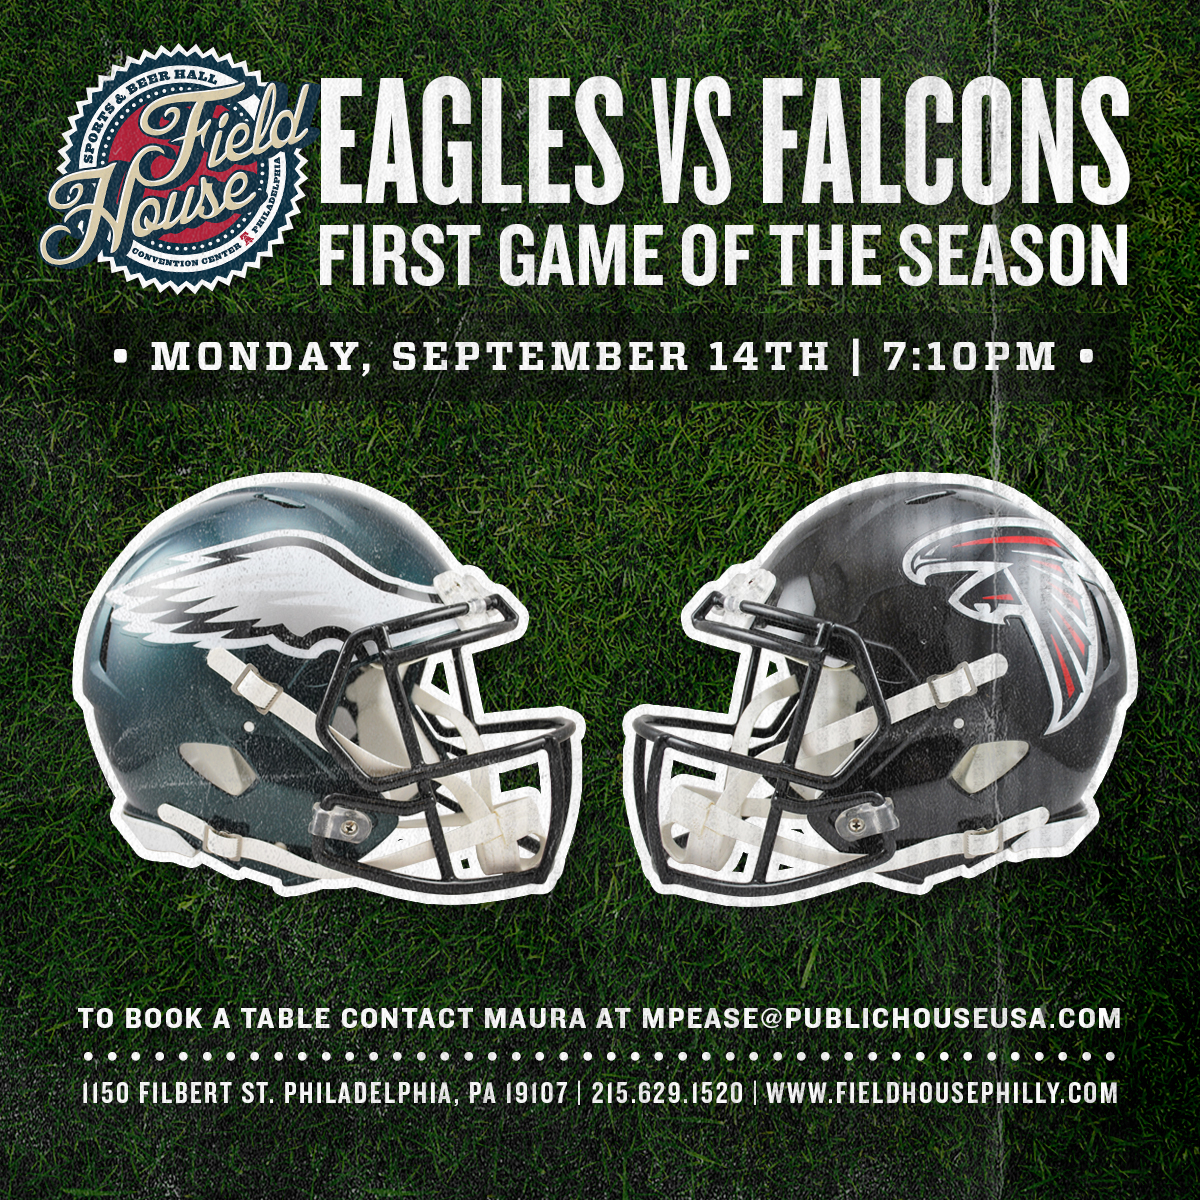 Eagles Vs. Falcons Sept. 14 2015 At 7:10 PM